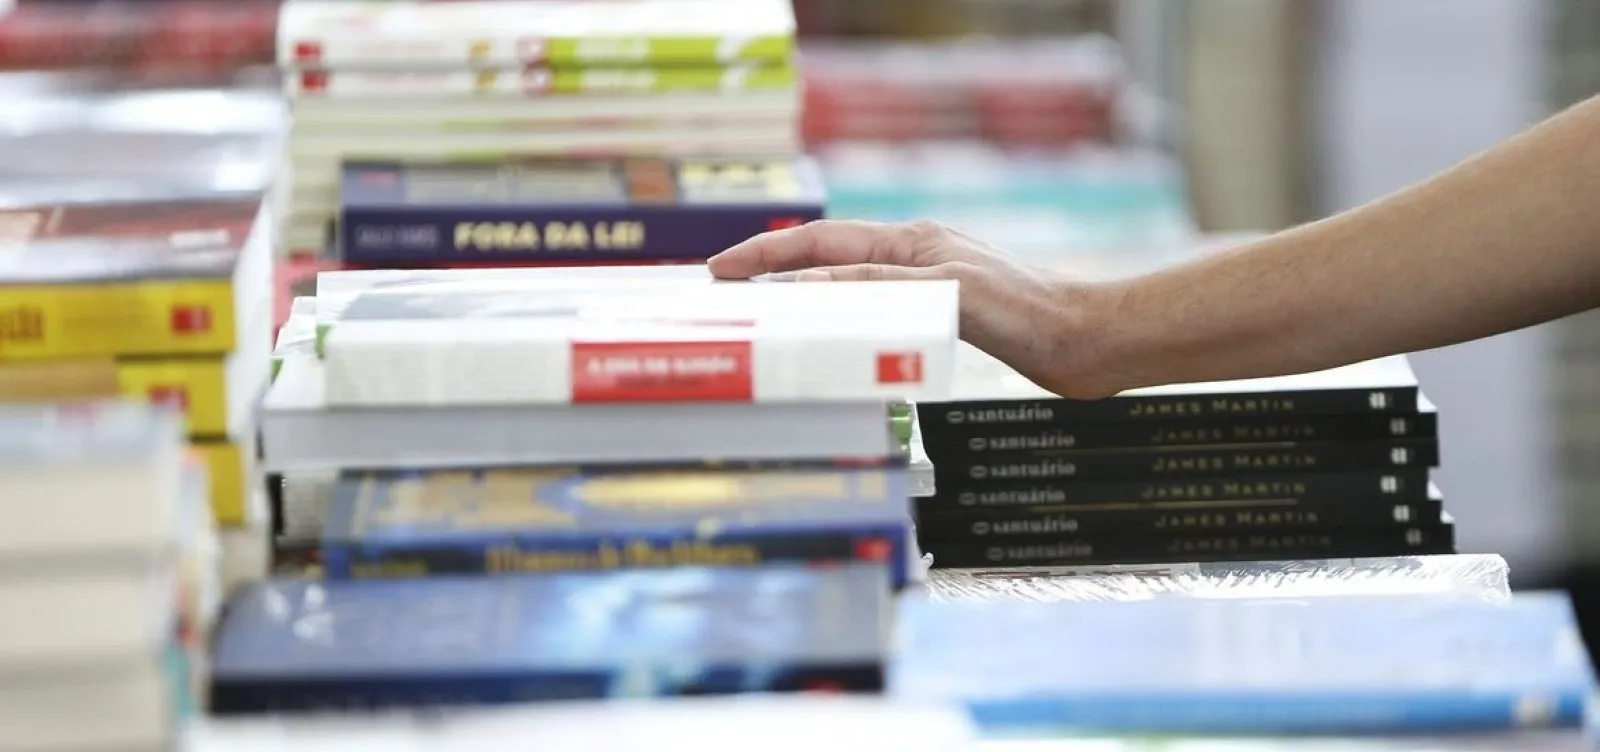 
		Edufba lança livros com 30% de desconto em festival